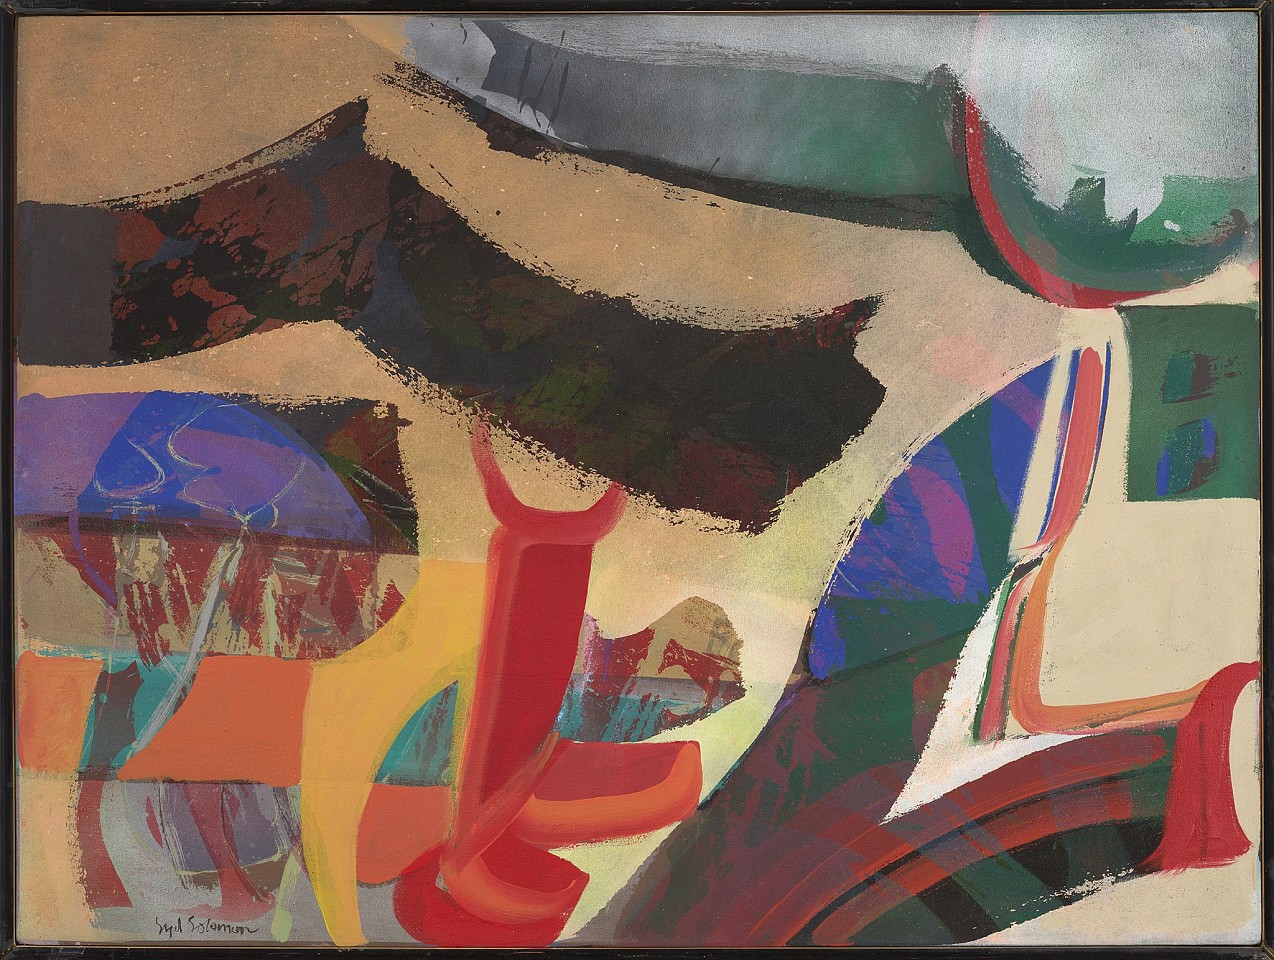 Syd Solomon, Hillight, 1981
Acrylic and aerosol enamel on canvas, 36 x 48 in. (91.4 x 121.9 cm)
SOL-00222